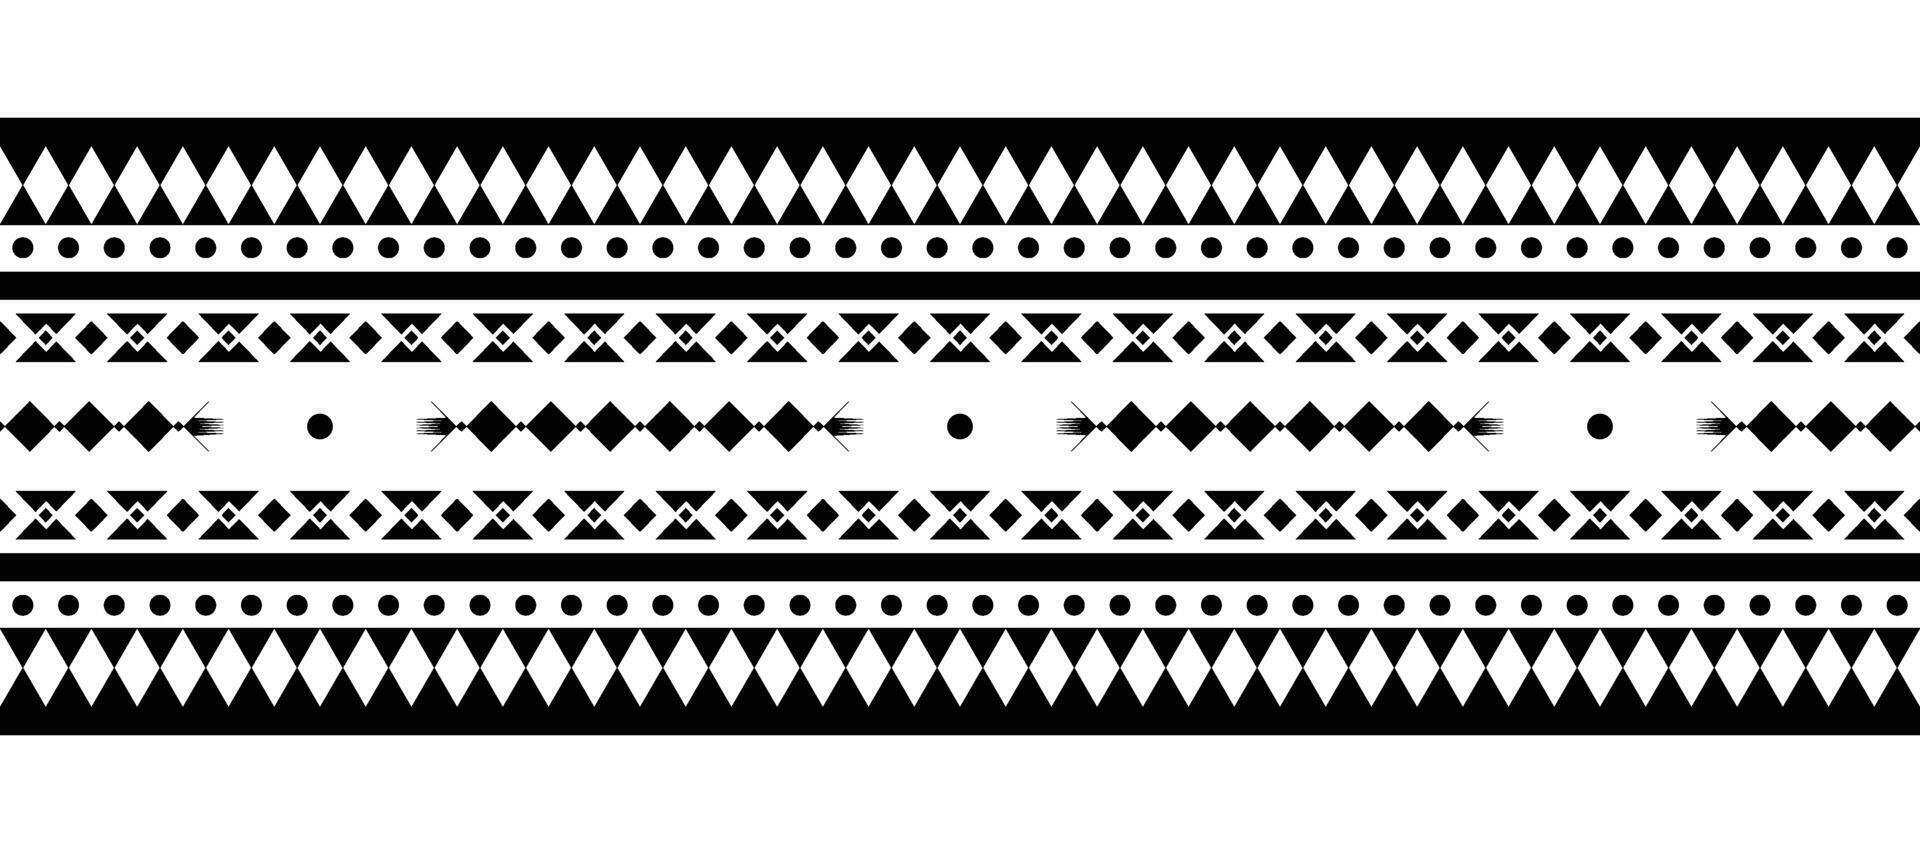 etnisch grens ornament vector illustratie. meetkundig etnisch oosters naadloos patroon. inheems Amerikaans Mexicaans Afrikaanse Indisch tribal stijl. ontwerp grens, textiel, kleding stof, kleding, tapijt, batik.